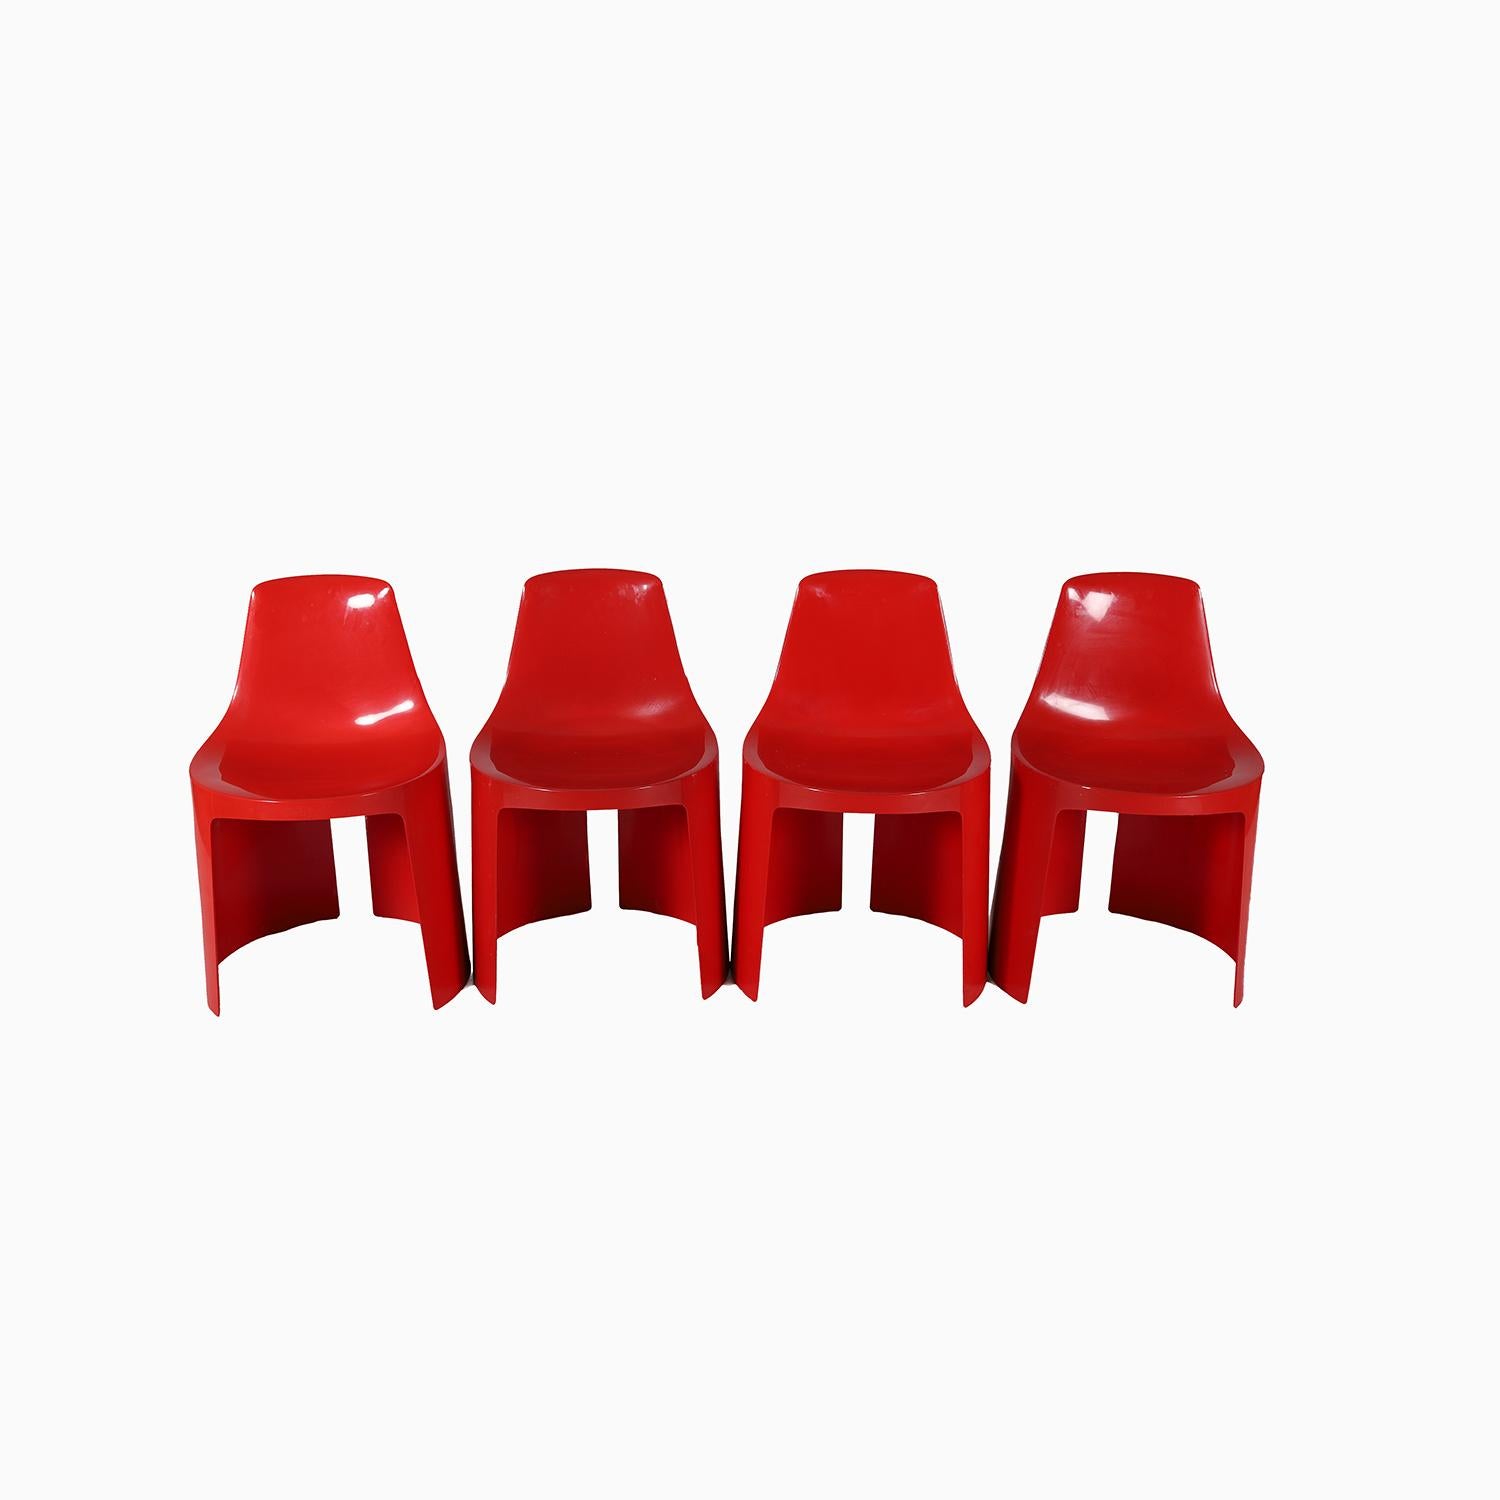 Ein Satz von 4 glänzenden geformten Plastikstühlen in leuchtendem Rot.  Mitte des 20. Jahrhunderts von Umbo entworfen und hergestellt, entworfen von Kay ReRoy Ruggles. eine fröhliche und platzsparende Ergänzung für jeden Raum.  Sie brauchen einen